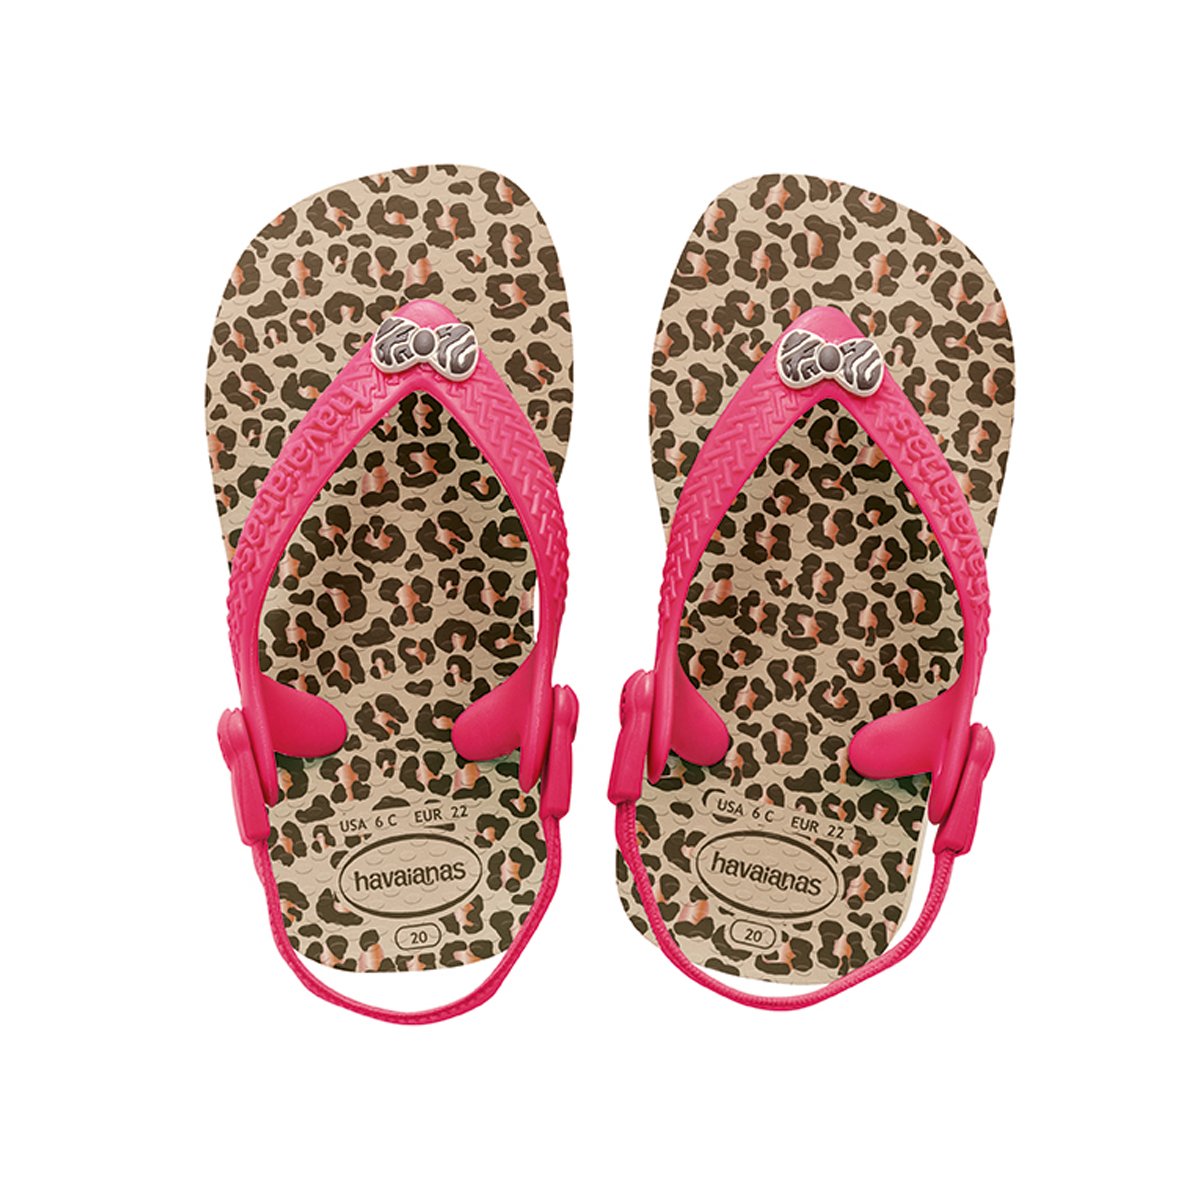  Sandals  Flip flops  Havaianas  Baby  Chic Sand Grey Brand 